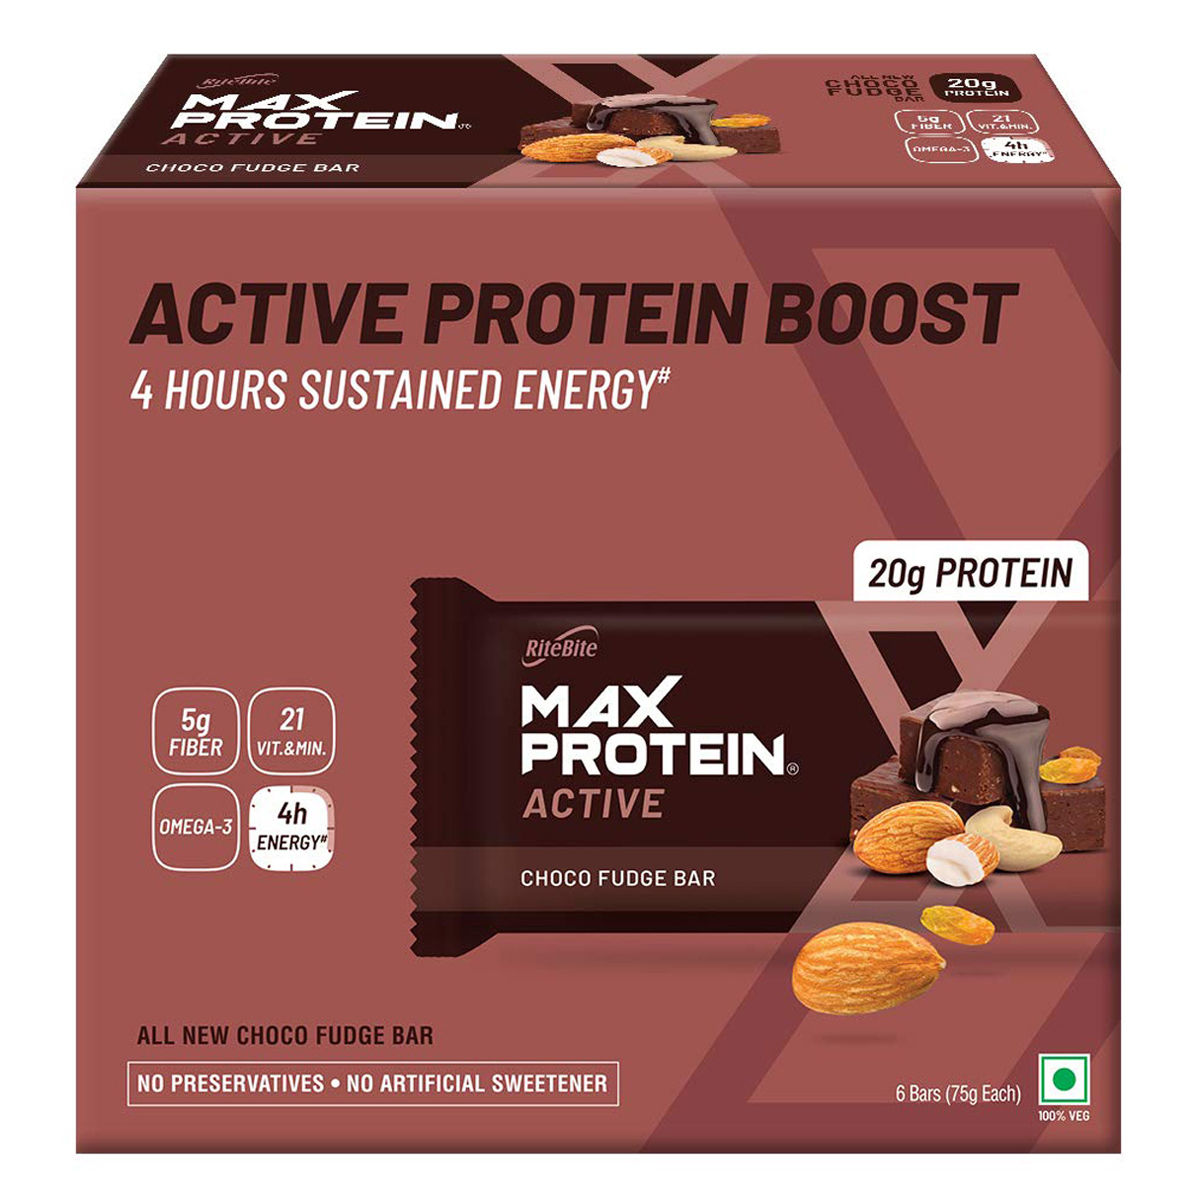 Ritebite Max Protein Choco Fudge Bar, (Pack Of 6), Pack of 1 